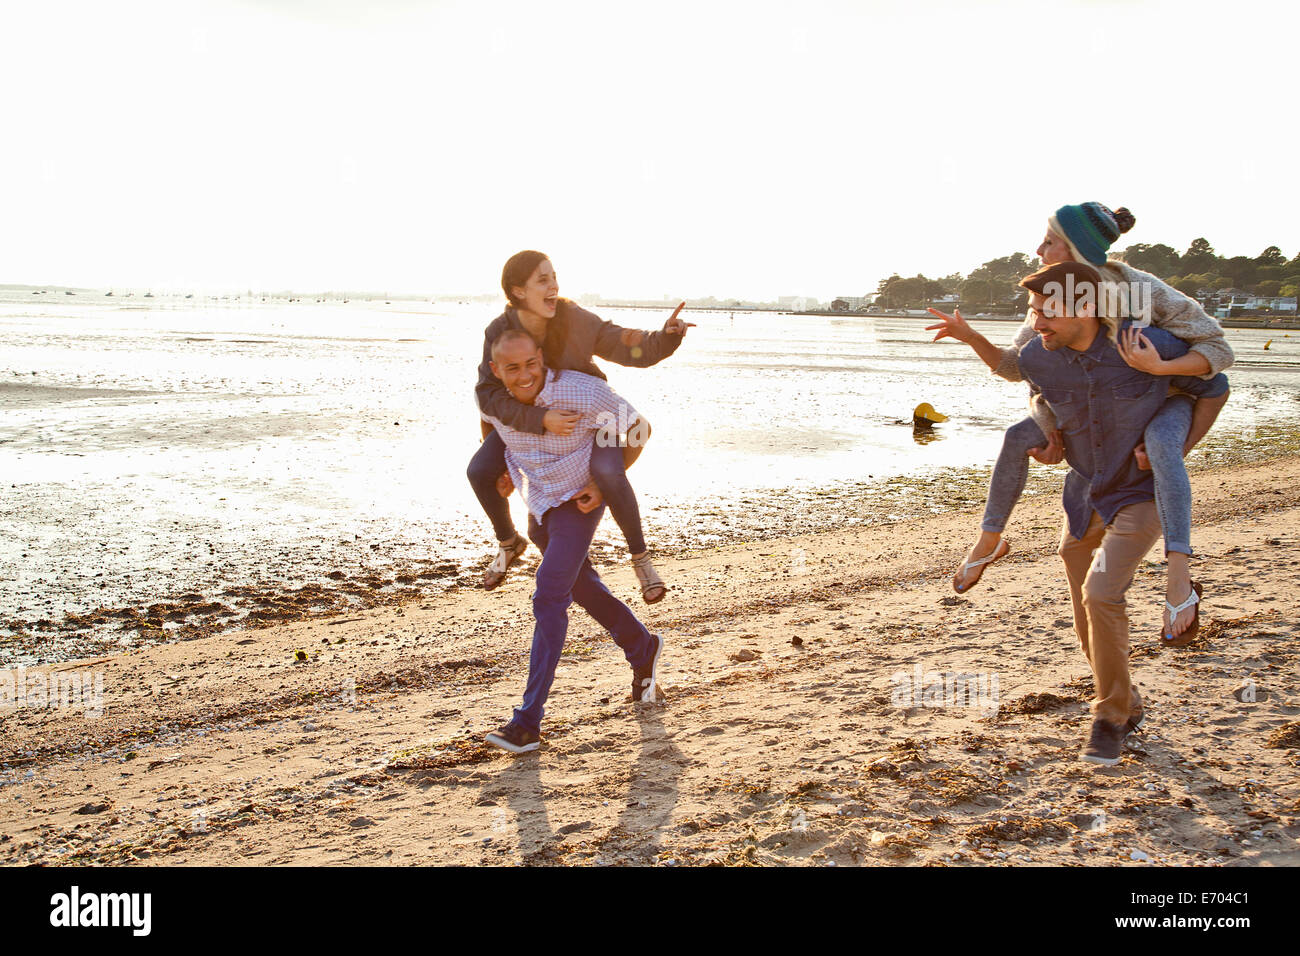 Les hommes de donner aux femmes piggyback ride on beach Banque D'Images